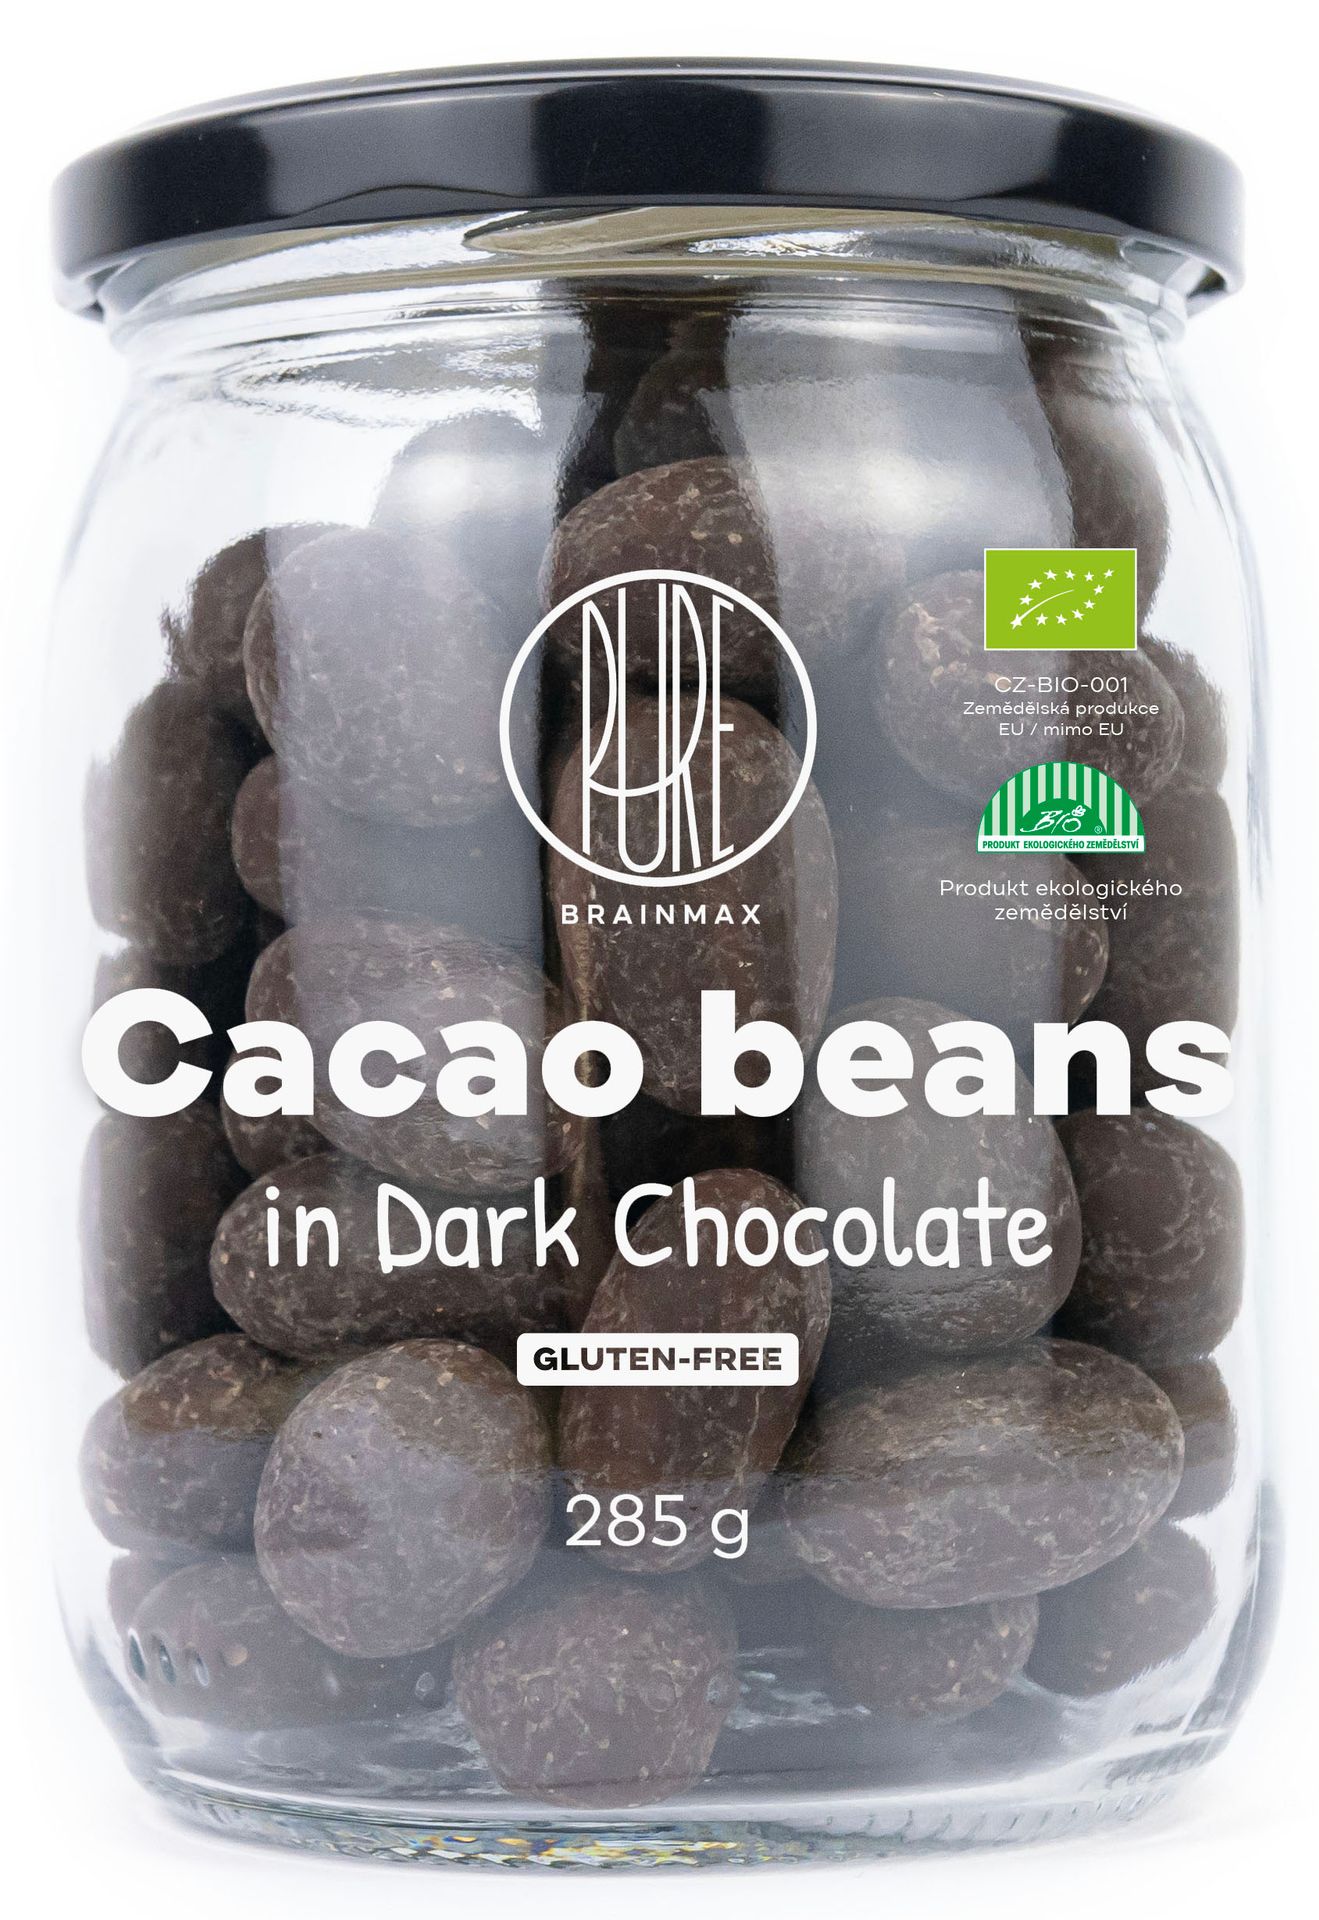 BrainMax Pure Cacao Beans in Dark Chocolate, BIO ziarna kakaowe w ciemnej czekoladzie, 285 g